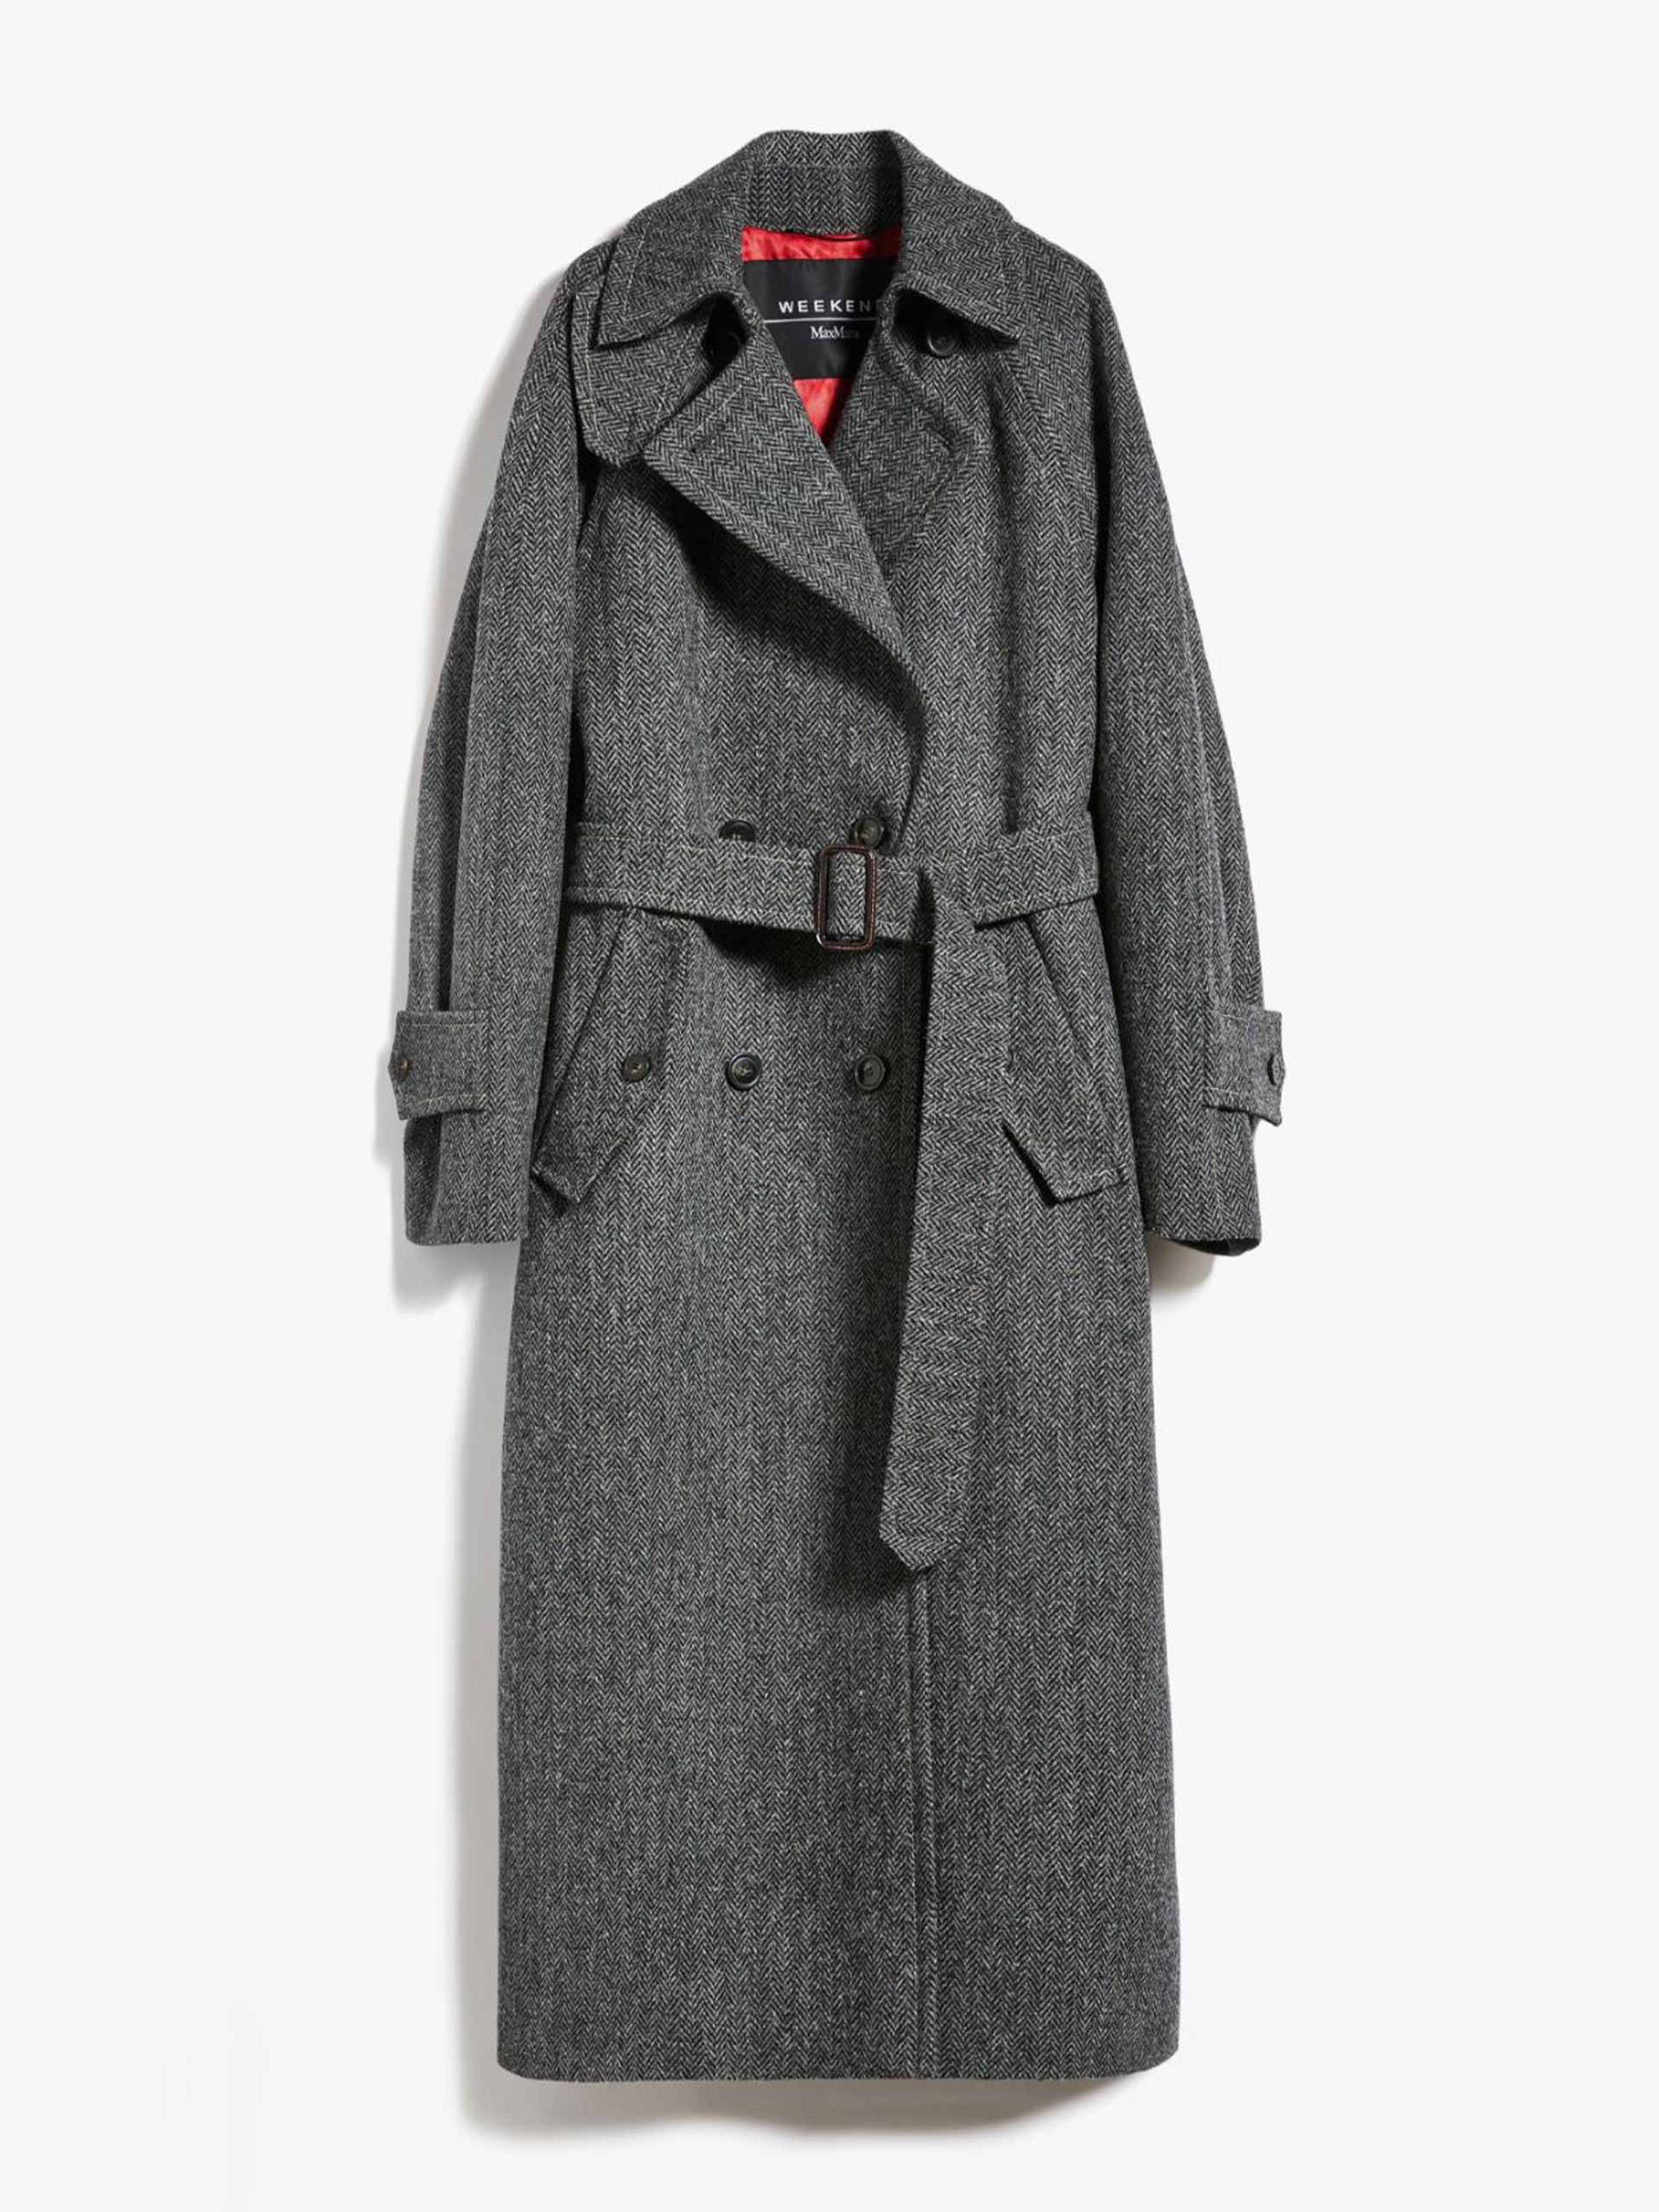 Harris grey tweed coat - Collagerie